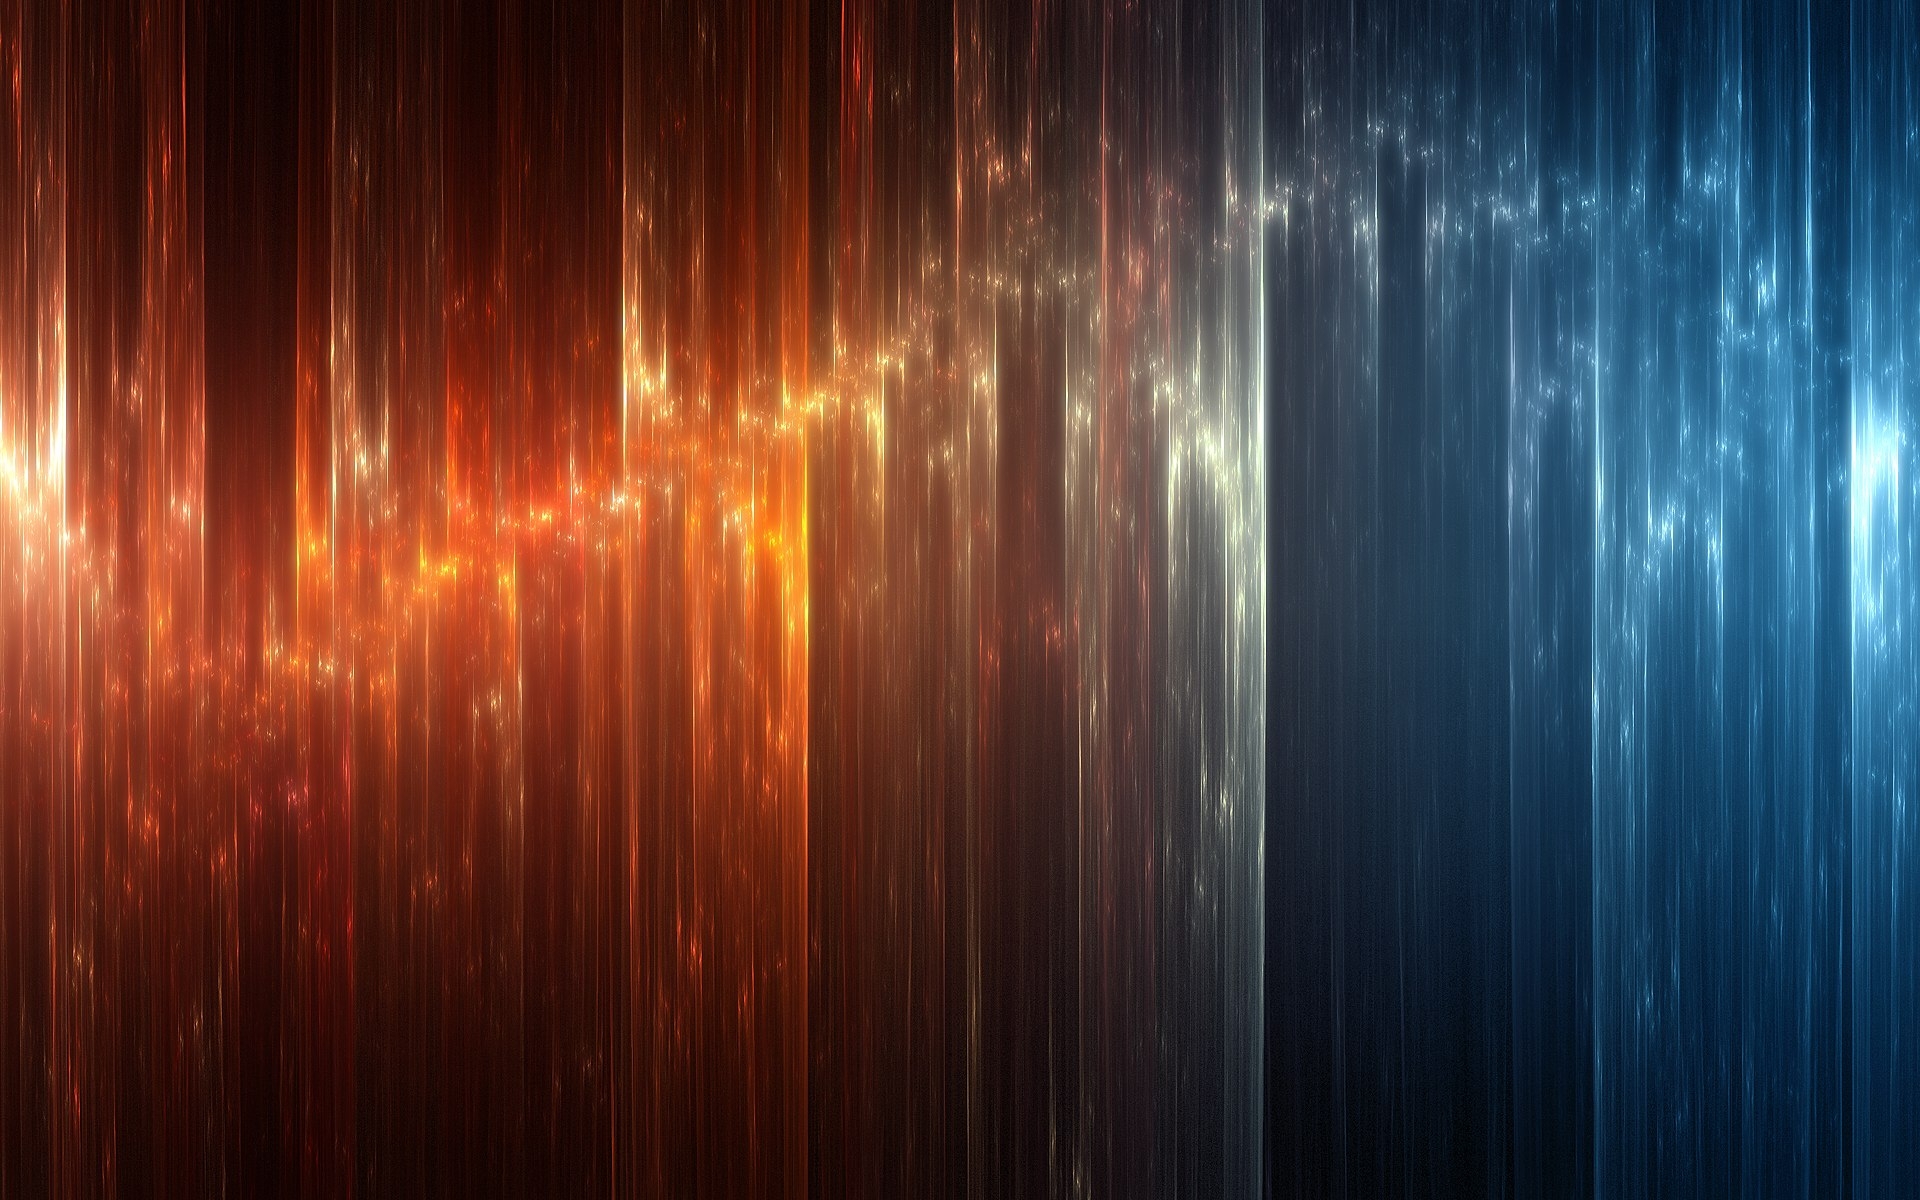 Blue And Orange Backgrounds Free Pixelstalknet